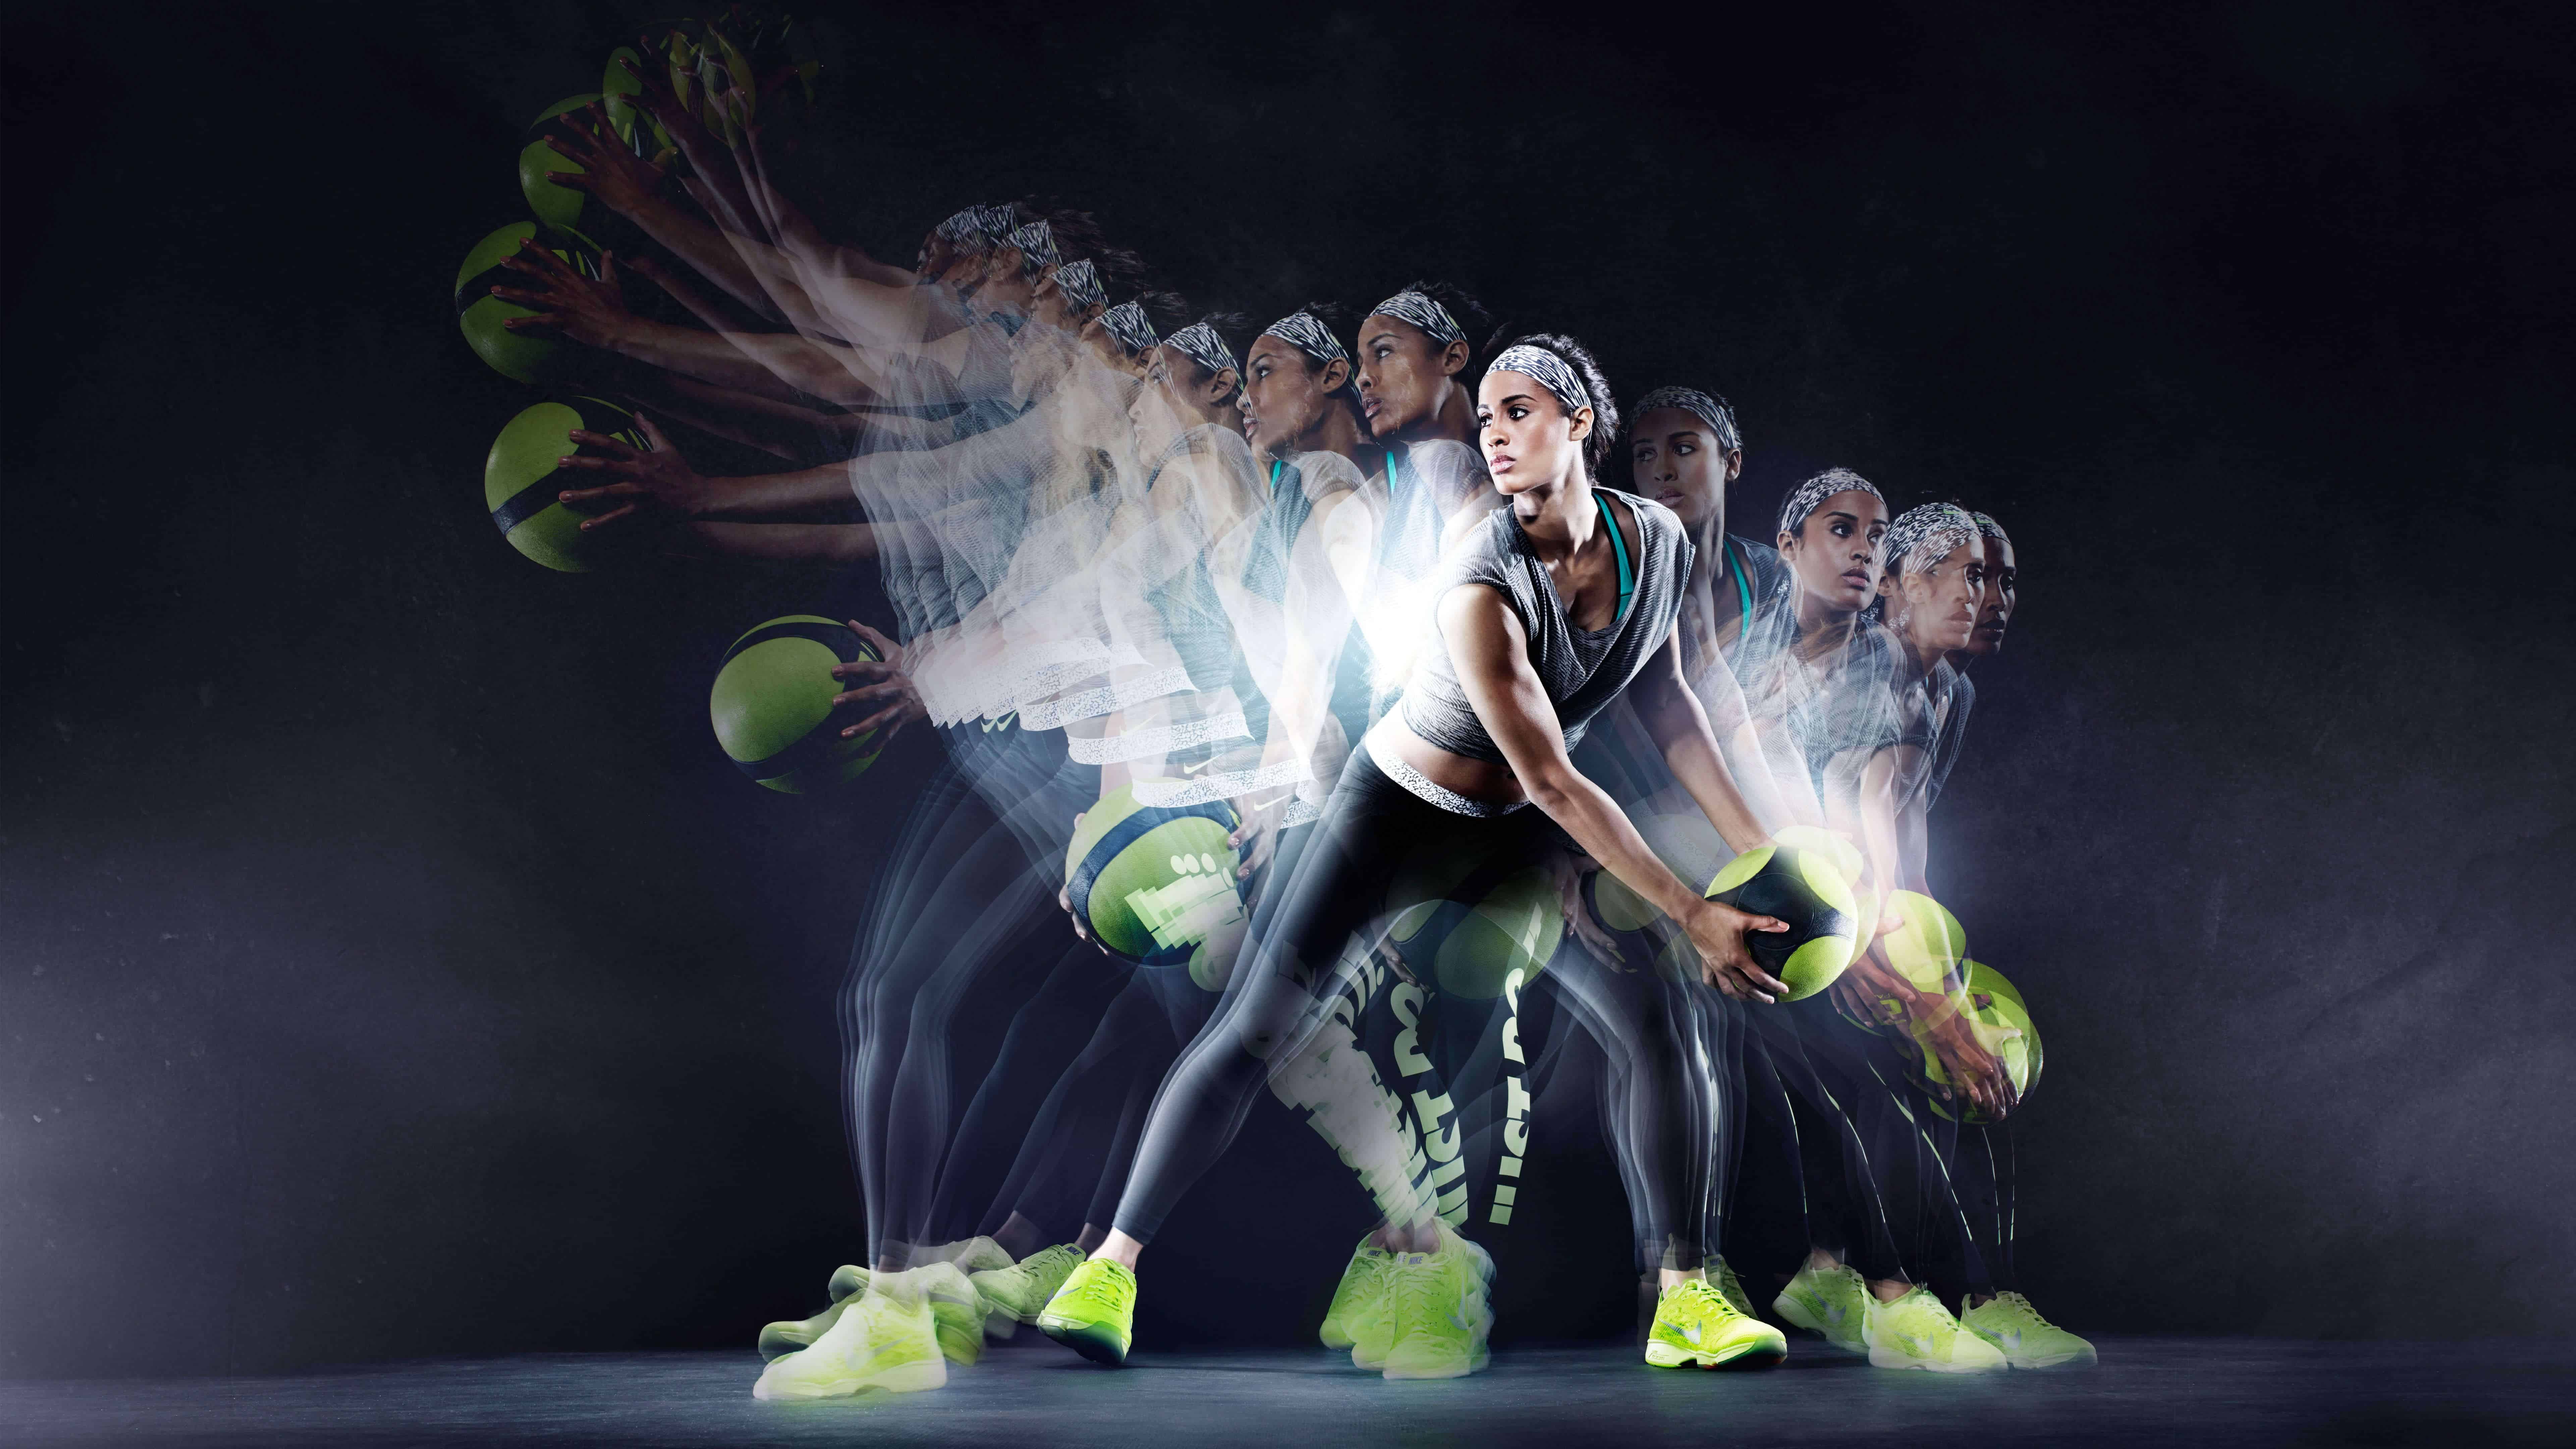 7680x4320 Hình nền Nike Zoom Fit Agility Fitness Footwear UHD 8K